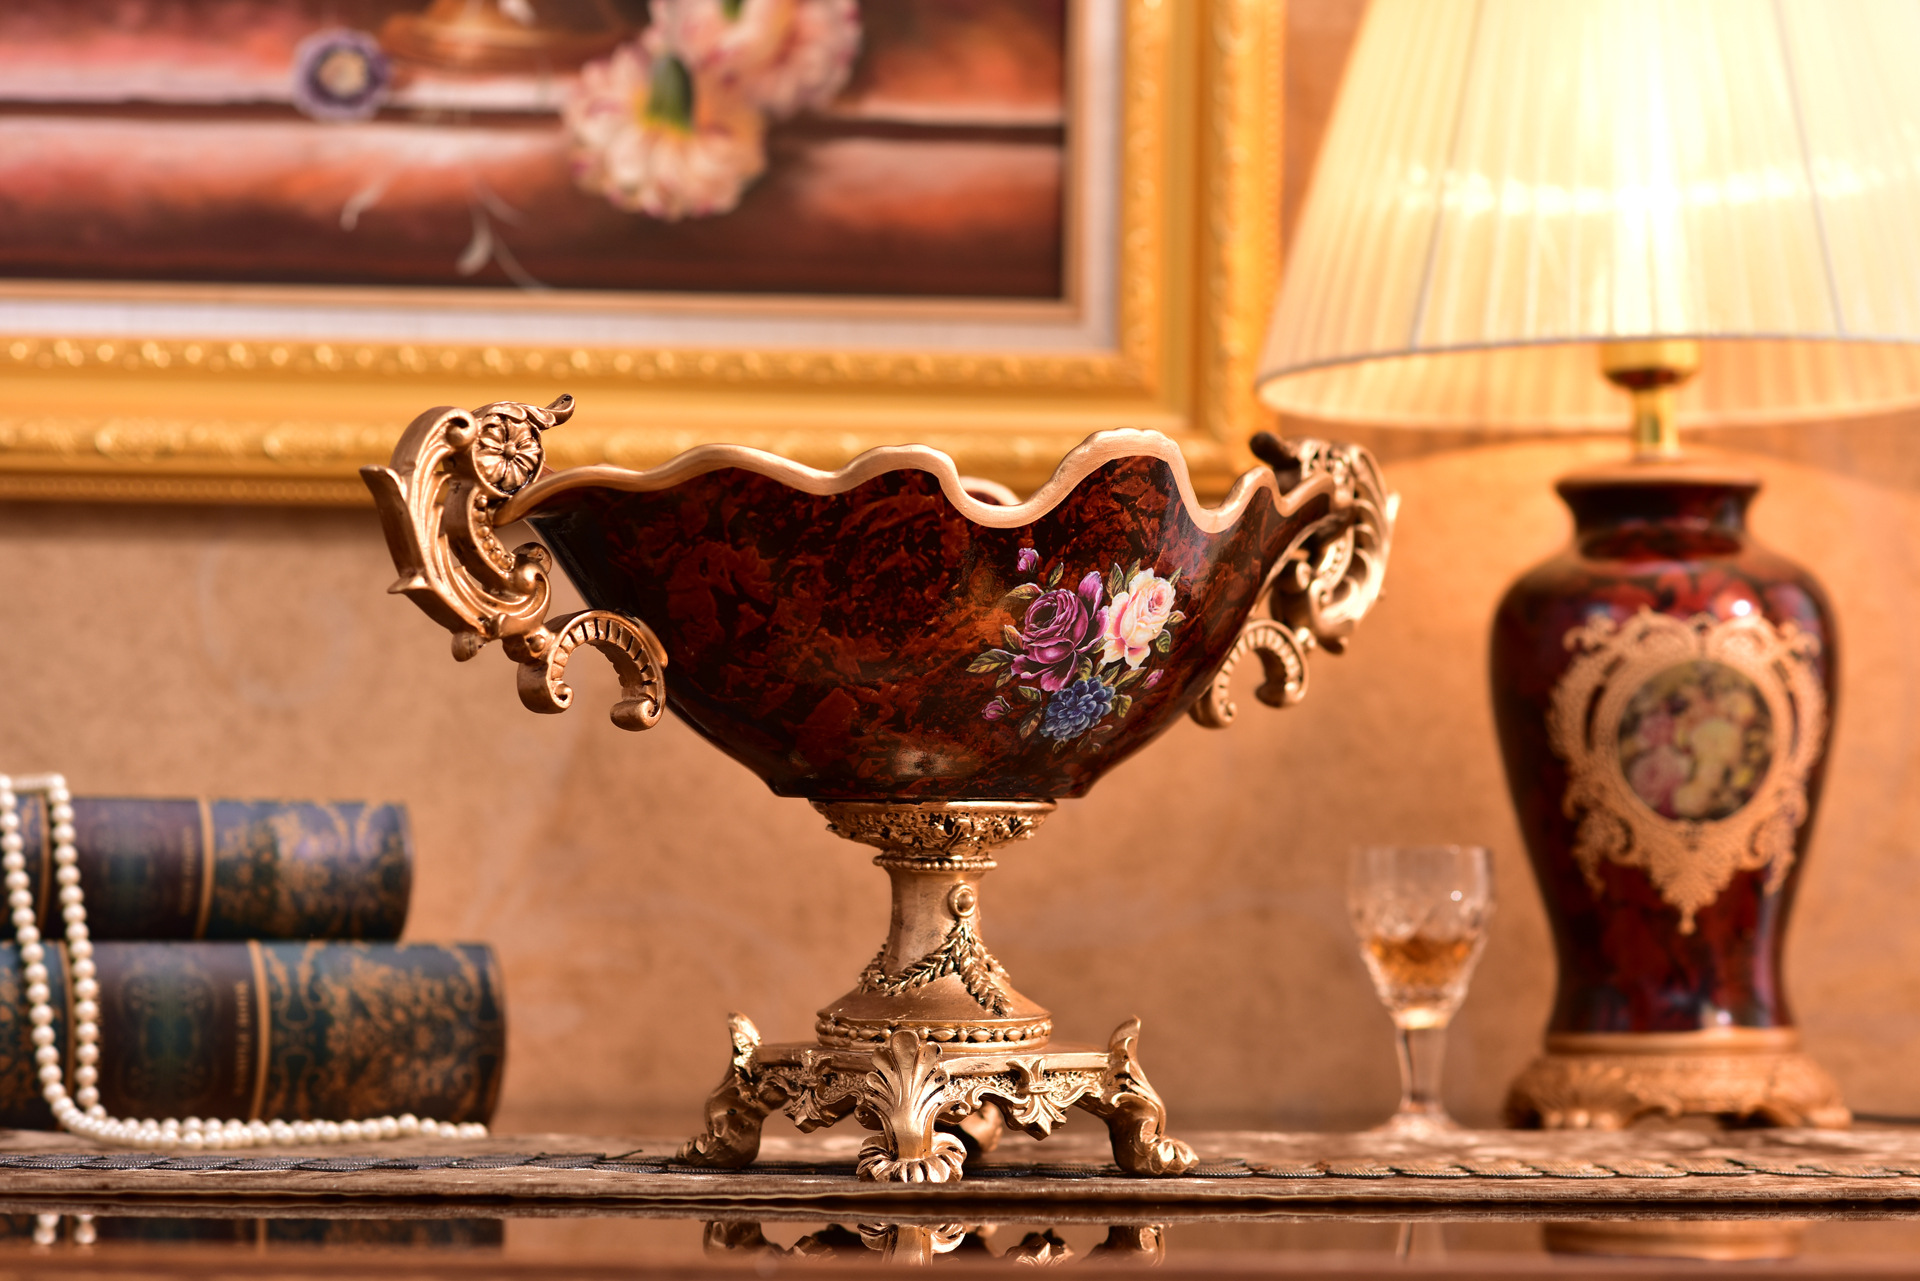 家居装饰陶瓷花瓶三件套 创意欧式家用装饰花瓶陶瓷工艺品摆件-阿里巴巴